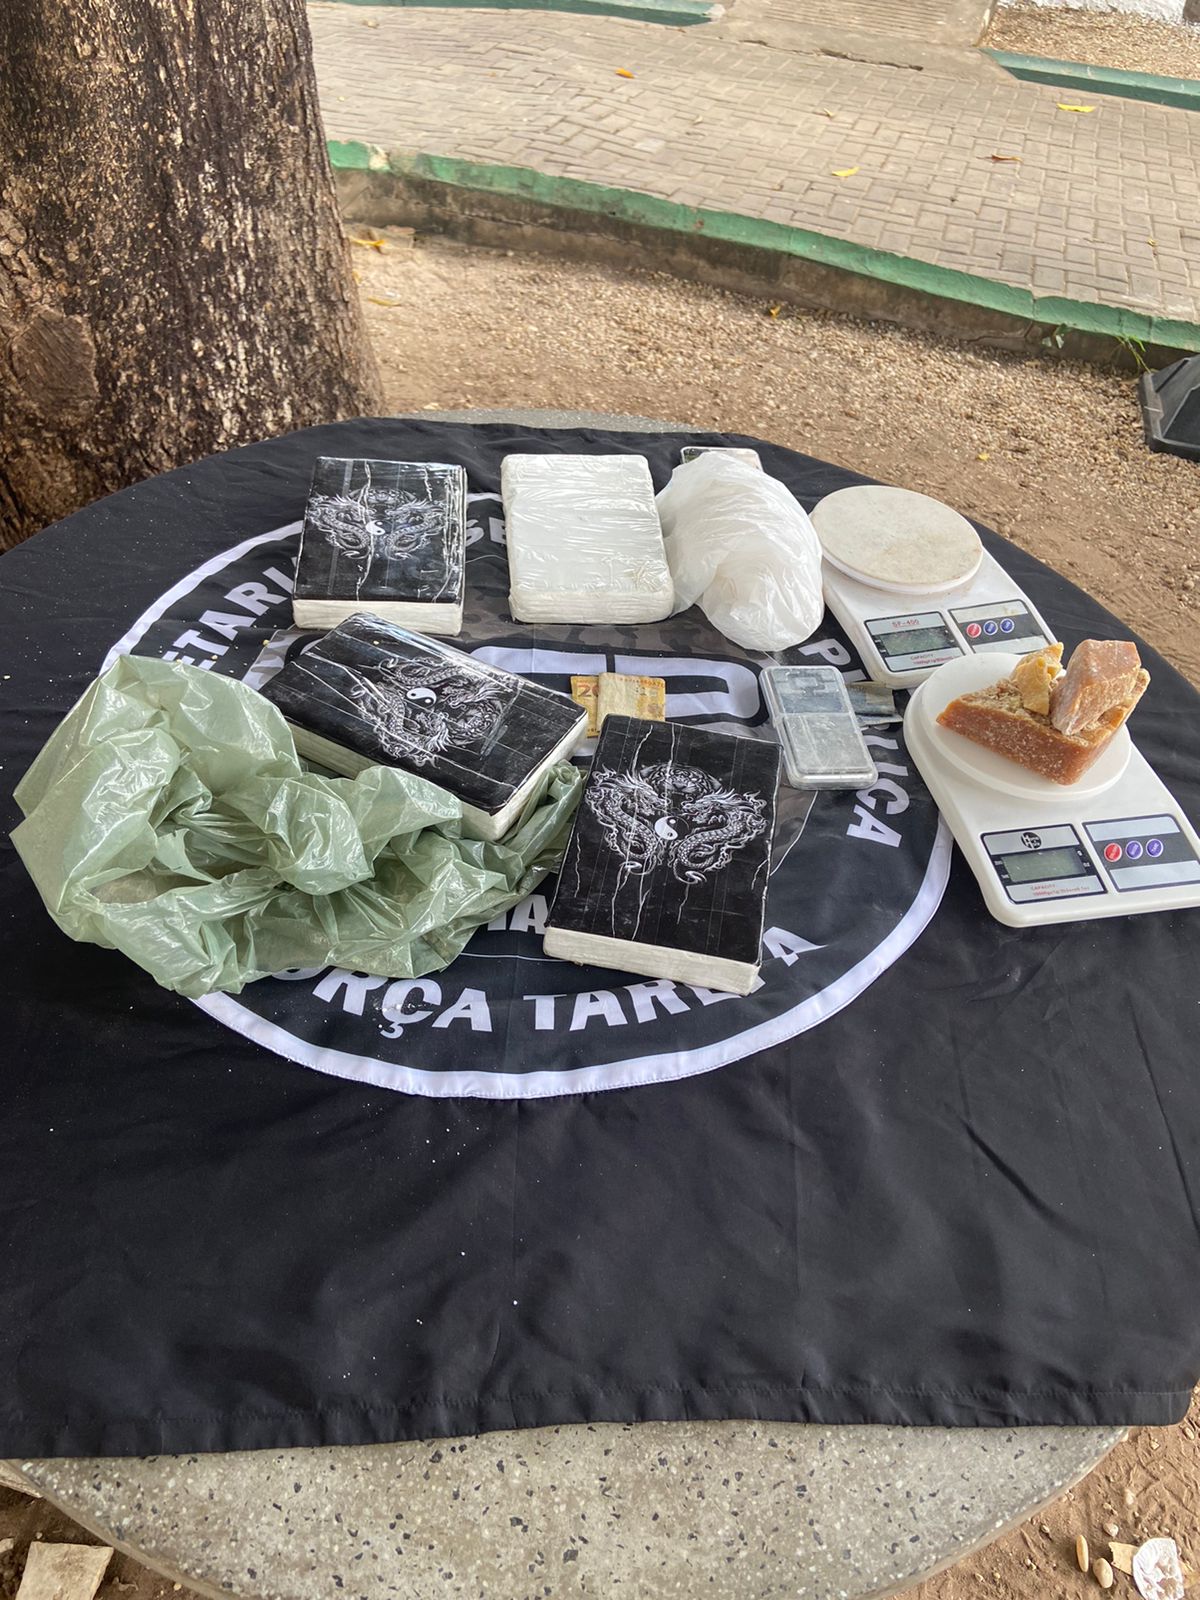 Polícia encontra 4 kg de cocaína enterrados em um quintal na zona sudeste de Teresina